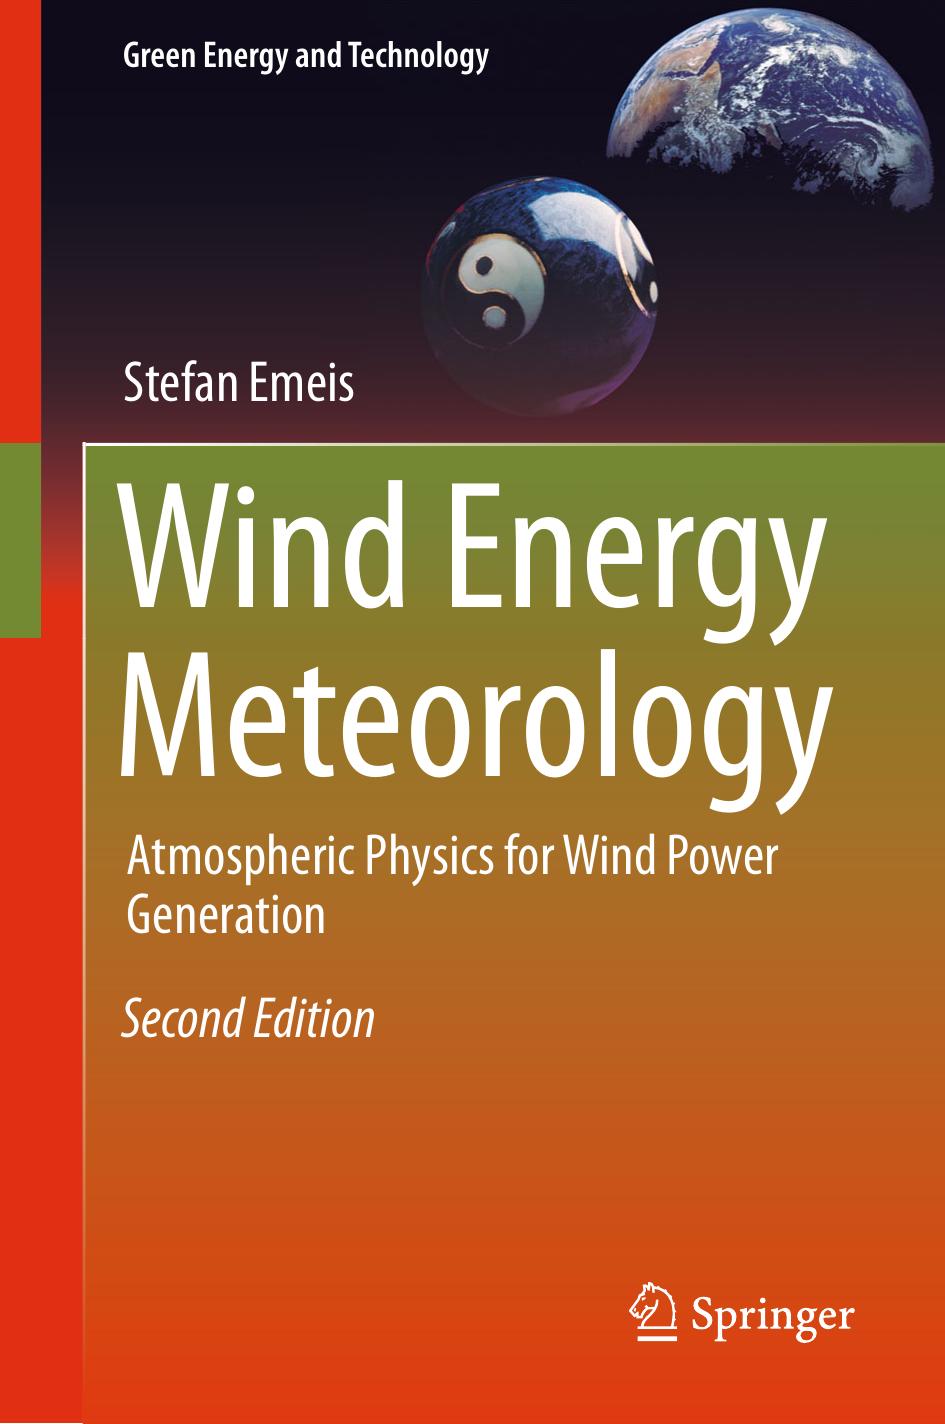 Wind Energy Meteorology by Stefan Emeis